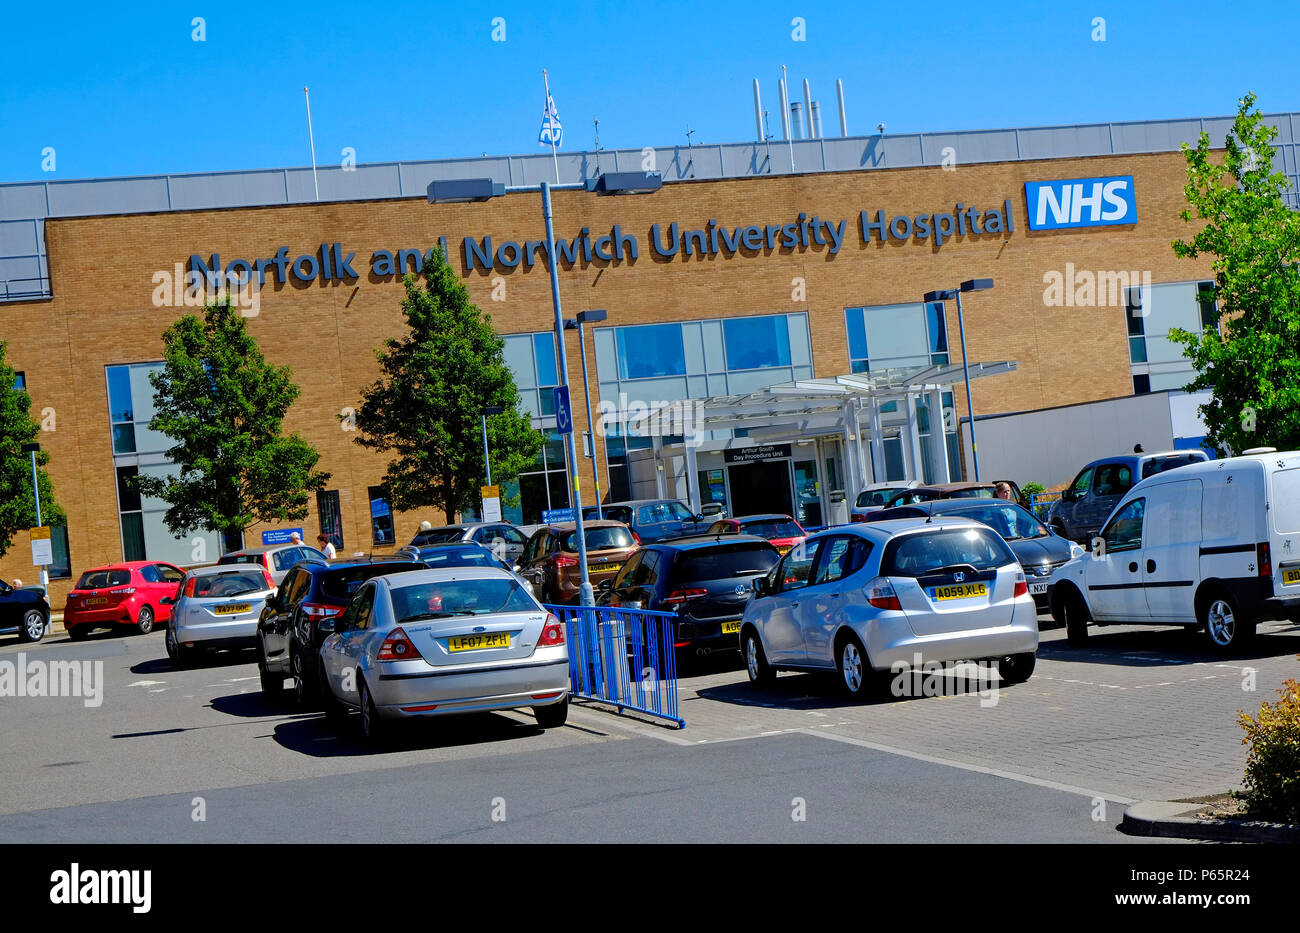 Norfolk and Norwich University Hospital, NHS, servicio nacional de salud, Inglaterra Foto de stock